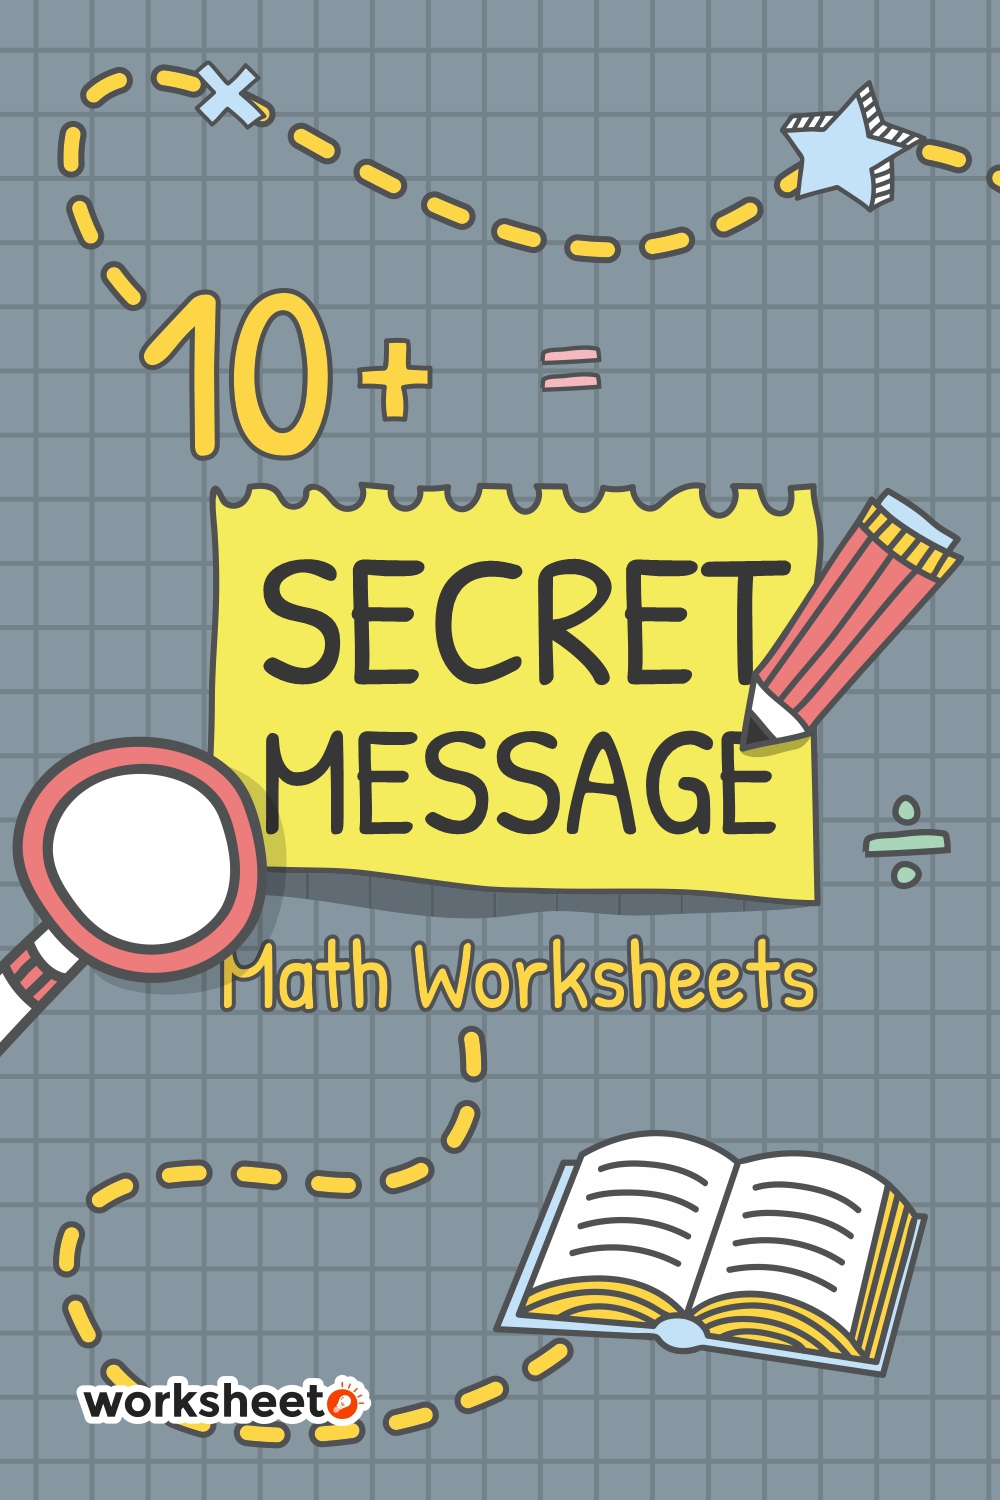 8 Images of Secret Message Math Worksheets